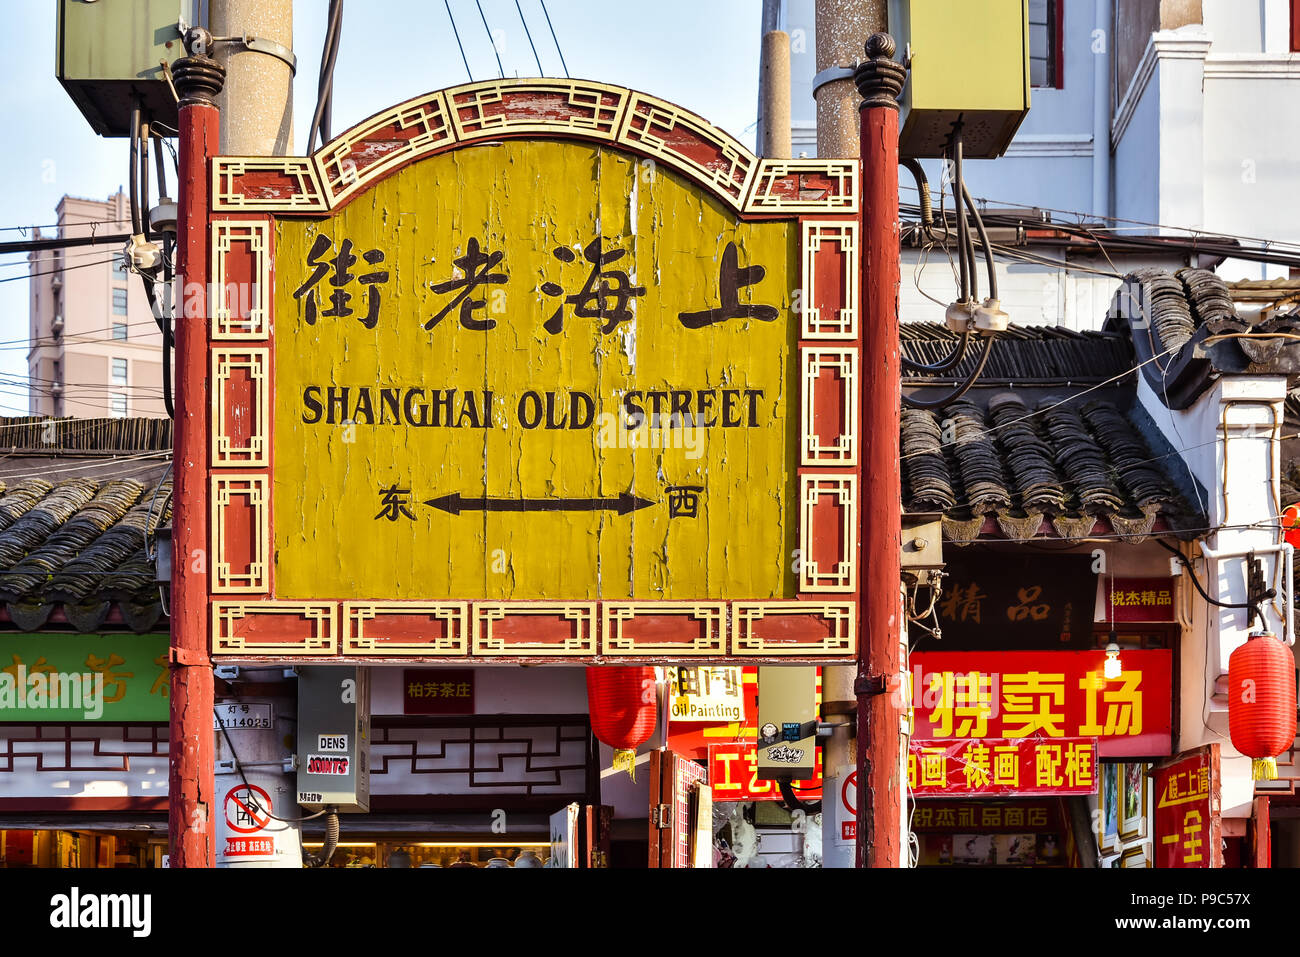 Shanghai, China - Apr. 24, 2018: Street sign, Shanghai Old Street, Shanghai, China. Stock Photo